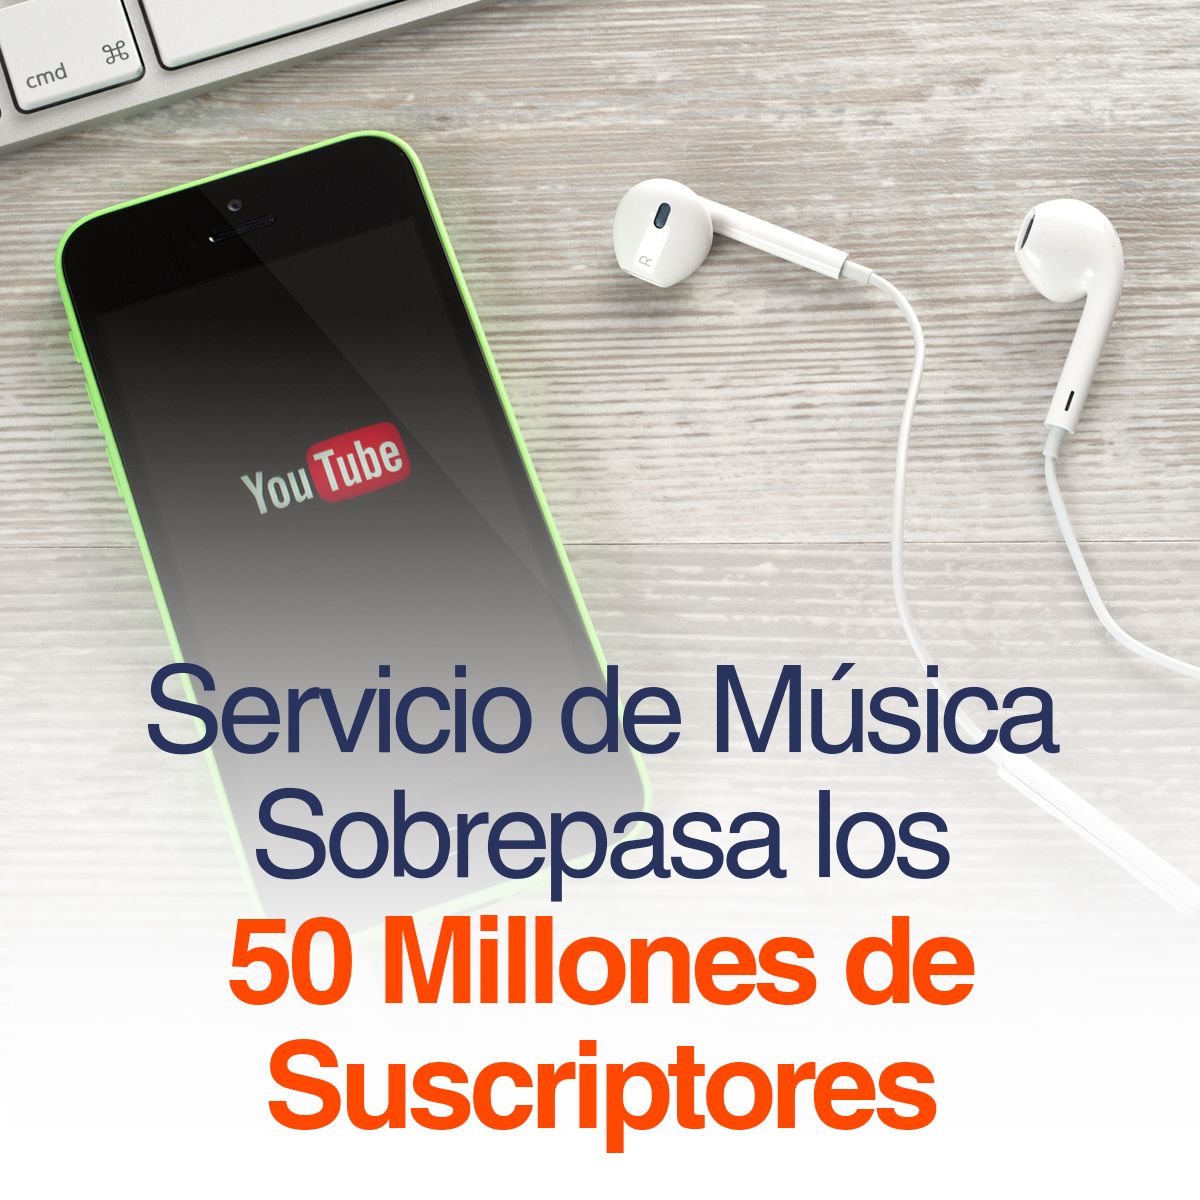 YouTube: Servicio de Música Sobrepasa los 50 Millones de Suscriptores